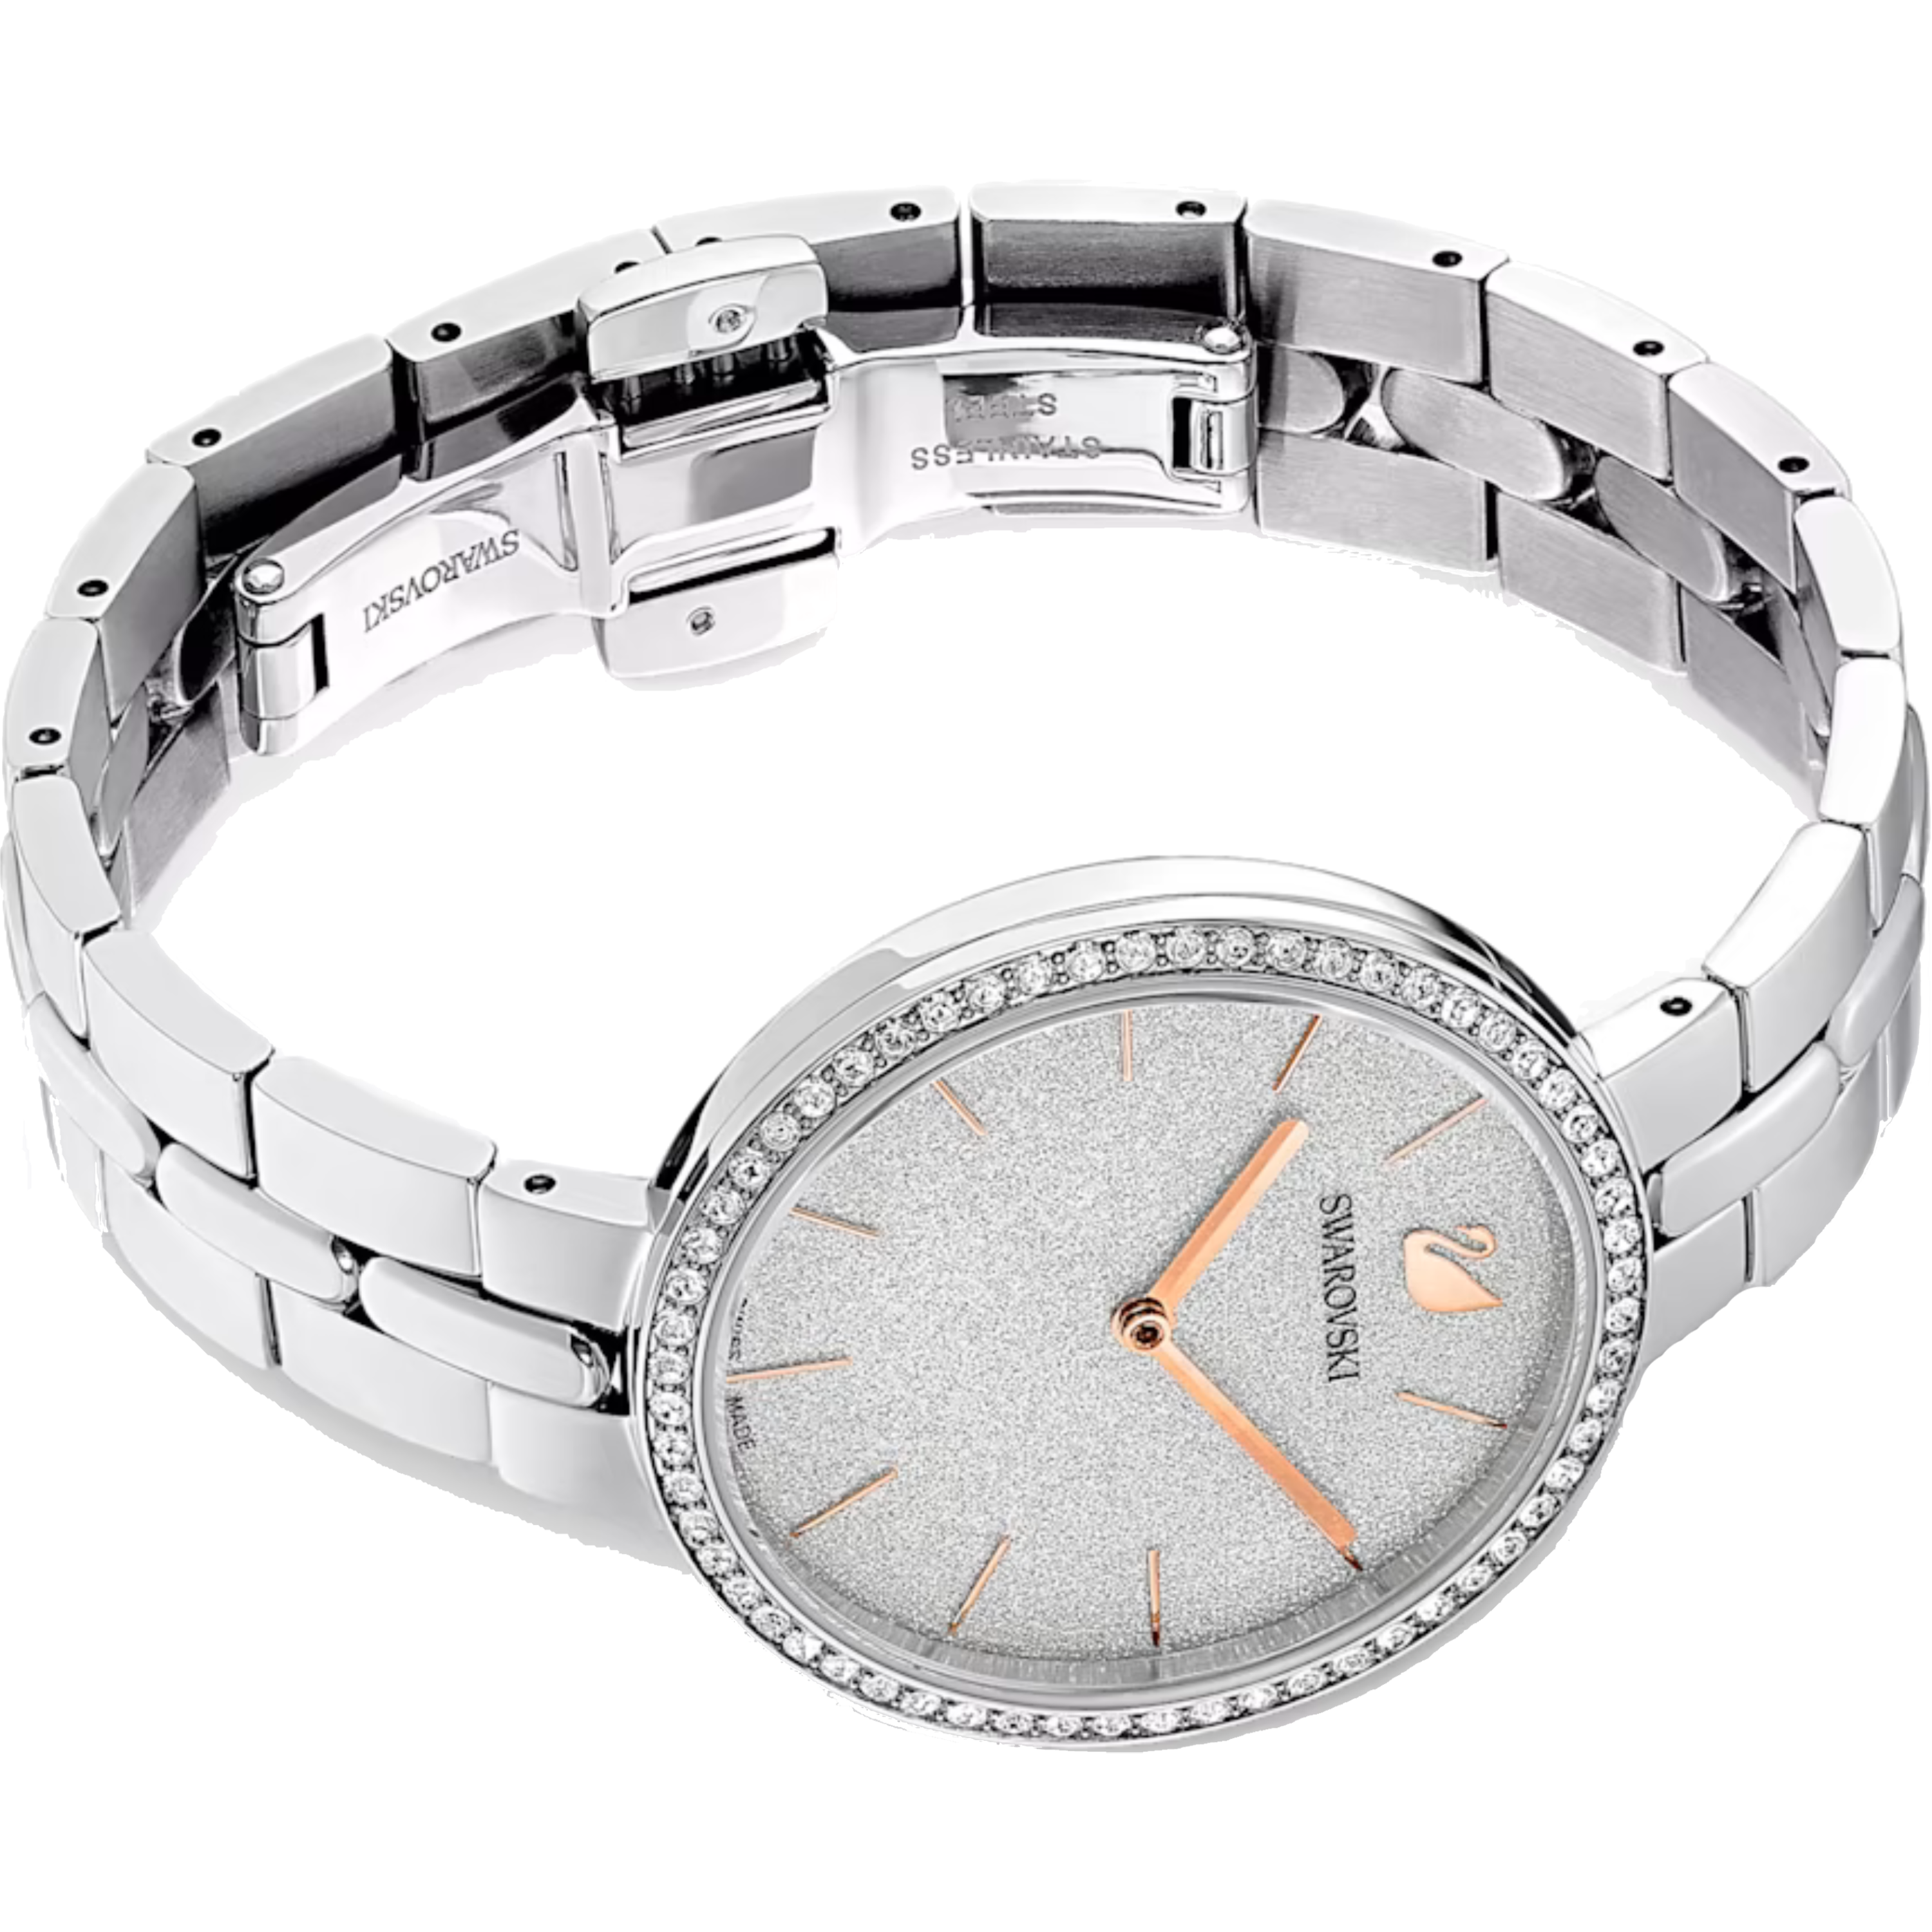 שעון יד לאישה Swarovski 5517807 32mm צבע כסף/רוזגולד - אחריות לשנתיים